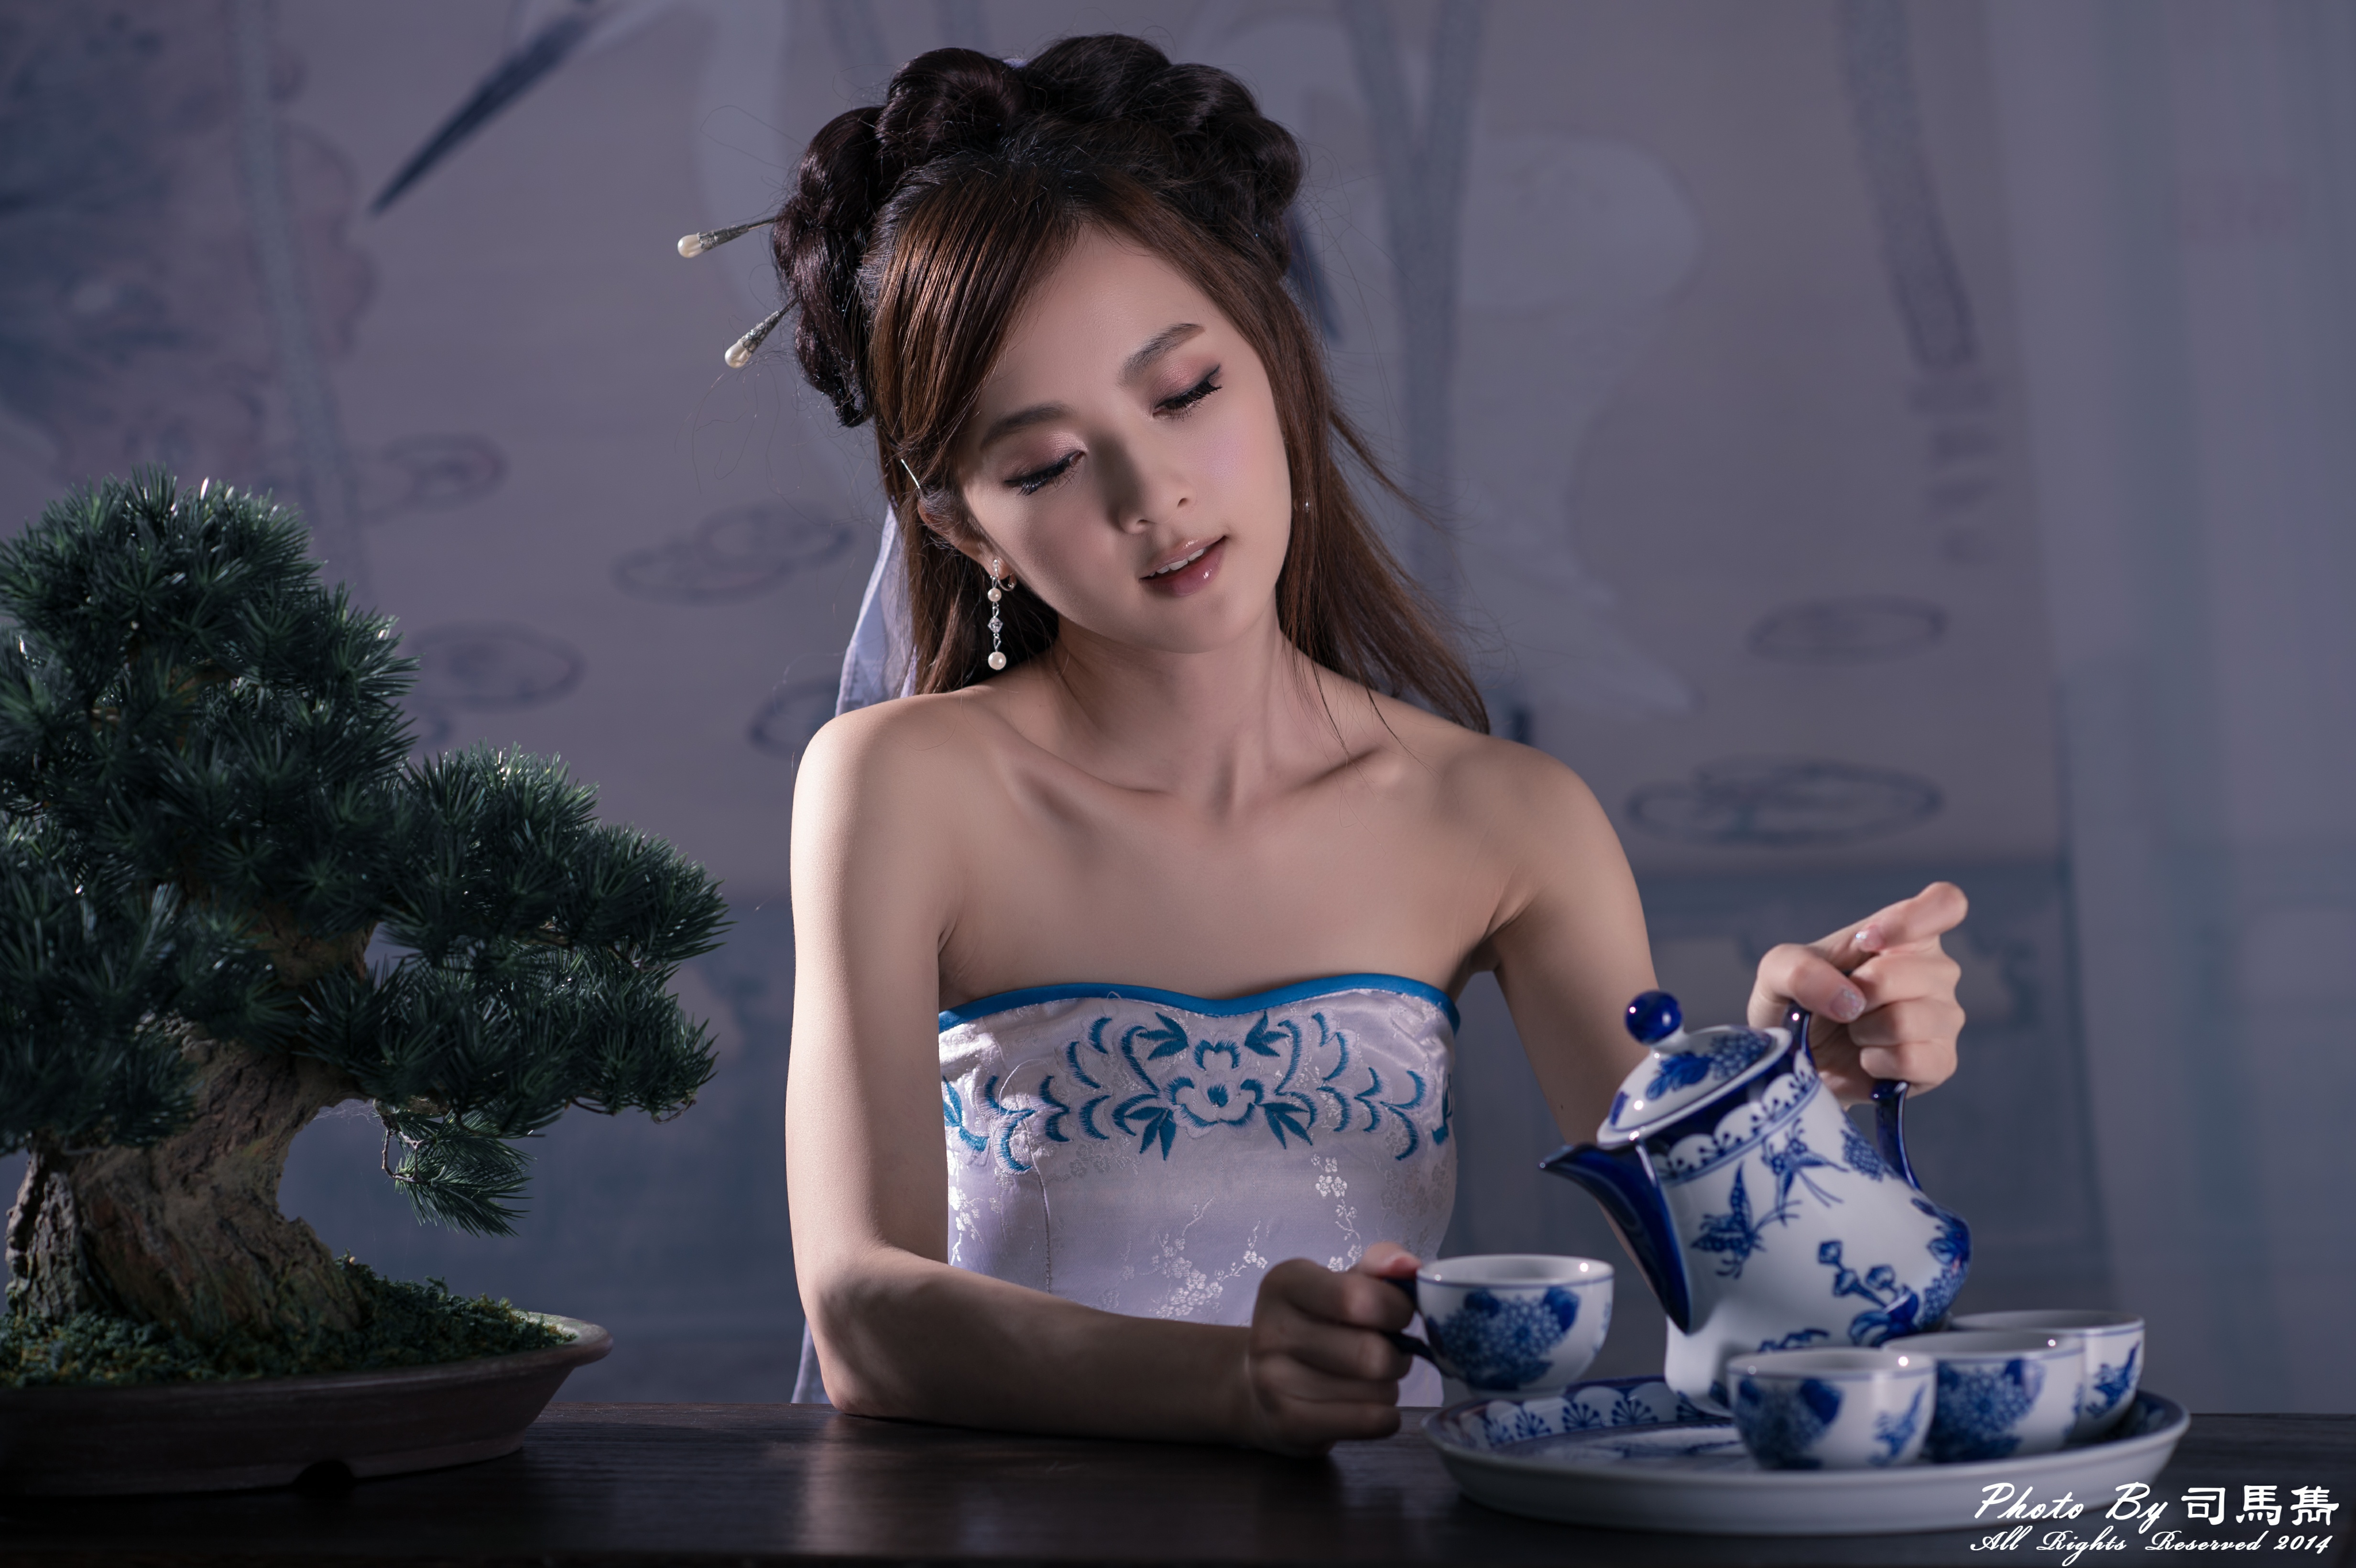 china, women, mikako zhang kaijie, asian, bonsai, chinese, cup, dress, hairpin, hair dress, taiwanese, tea set